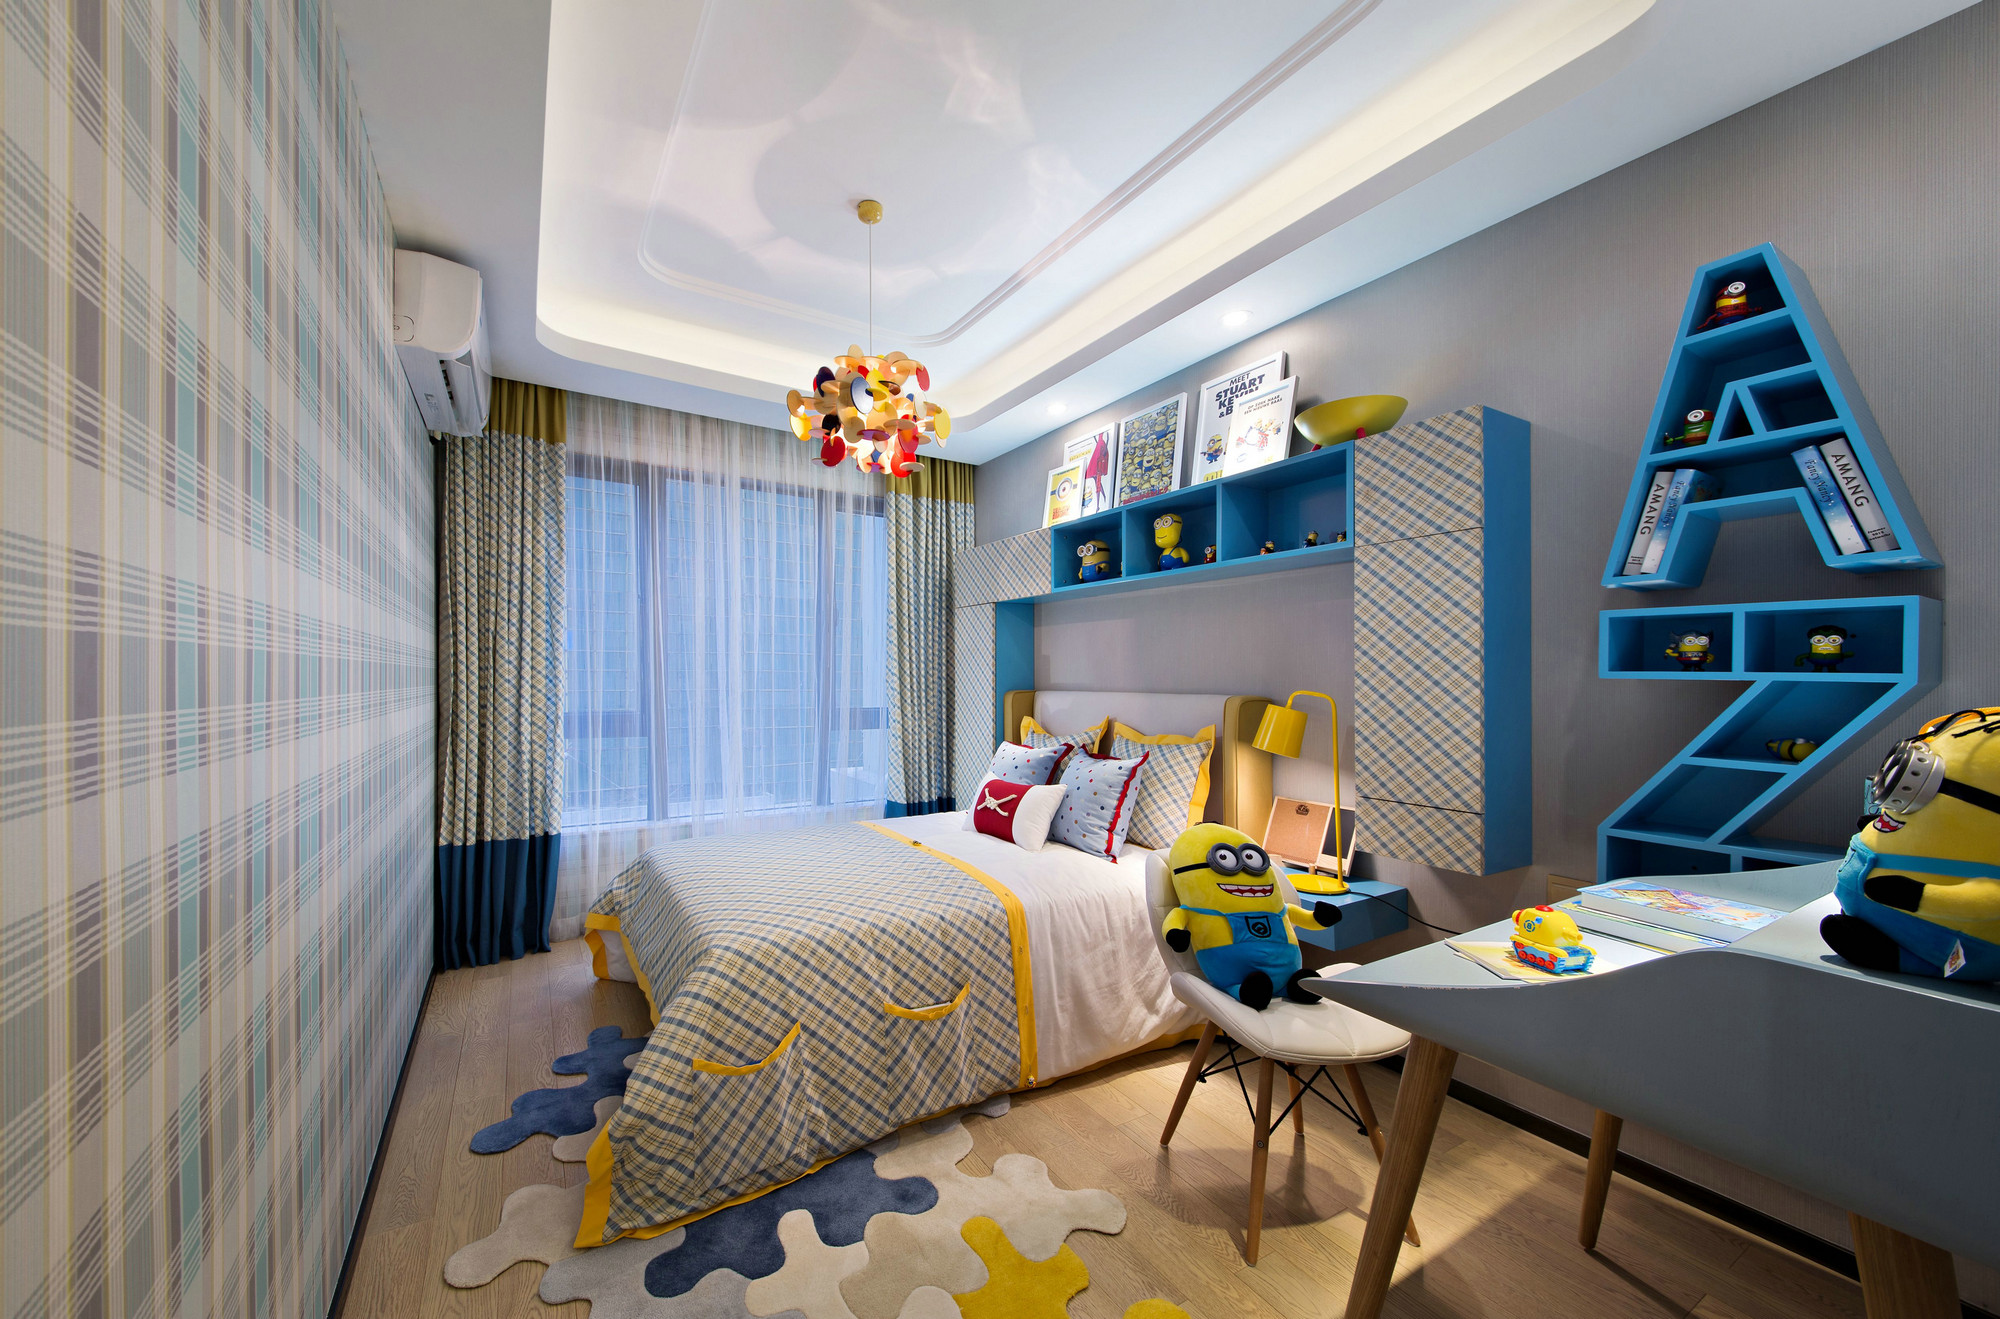 灰色背景使儿童房空间不显得轻佻，收纳的设计点缀透出对有序生活的追求。